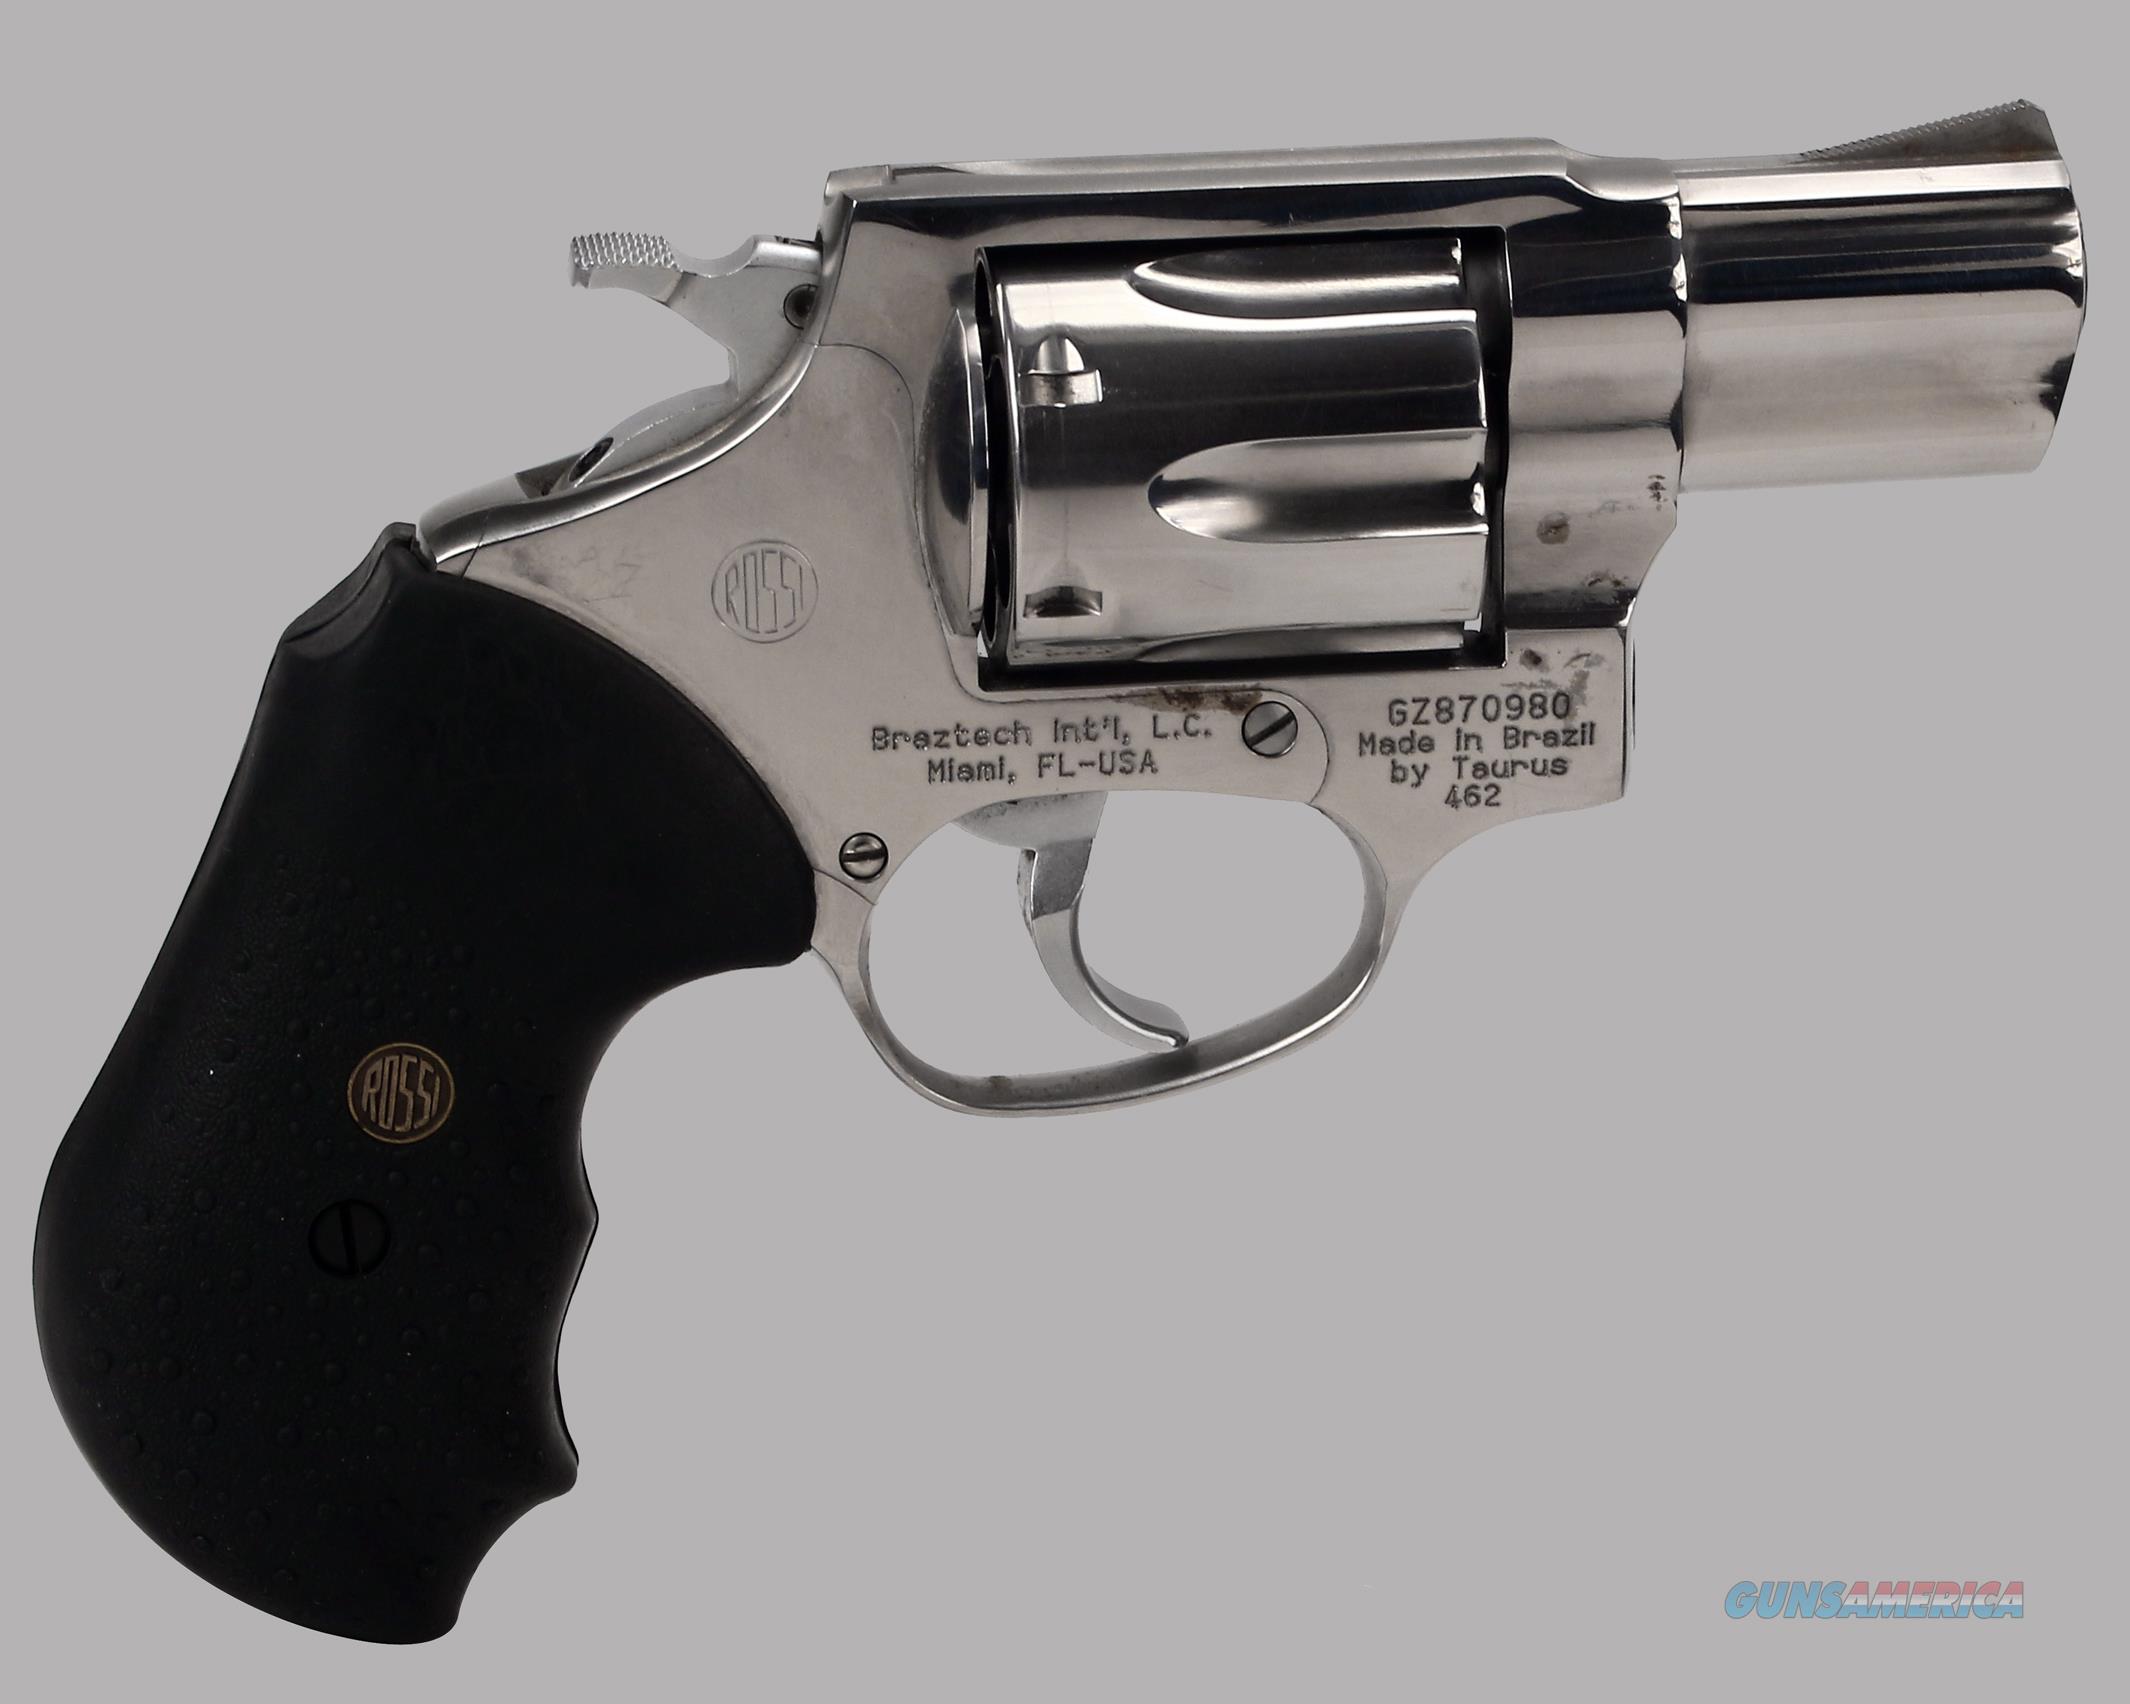 Gang Raffinaderij Flash Rossi (Braztech) 375 Magnum Model 462 Revolver for sale